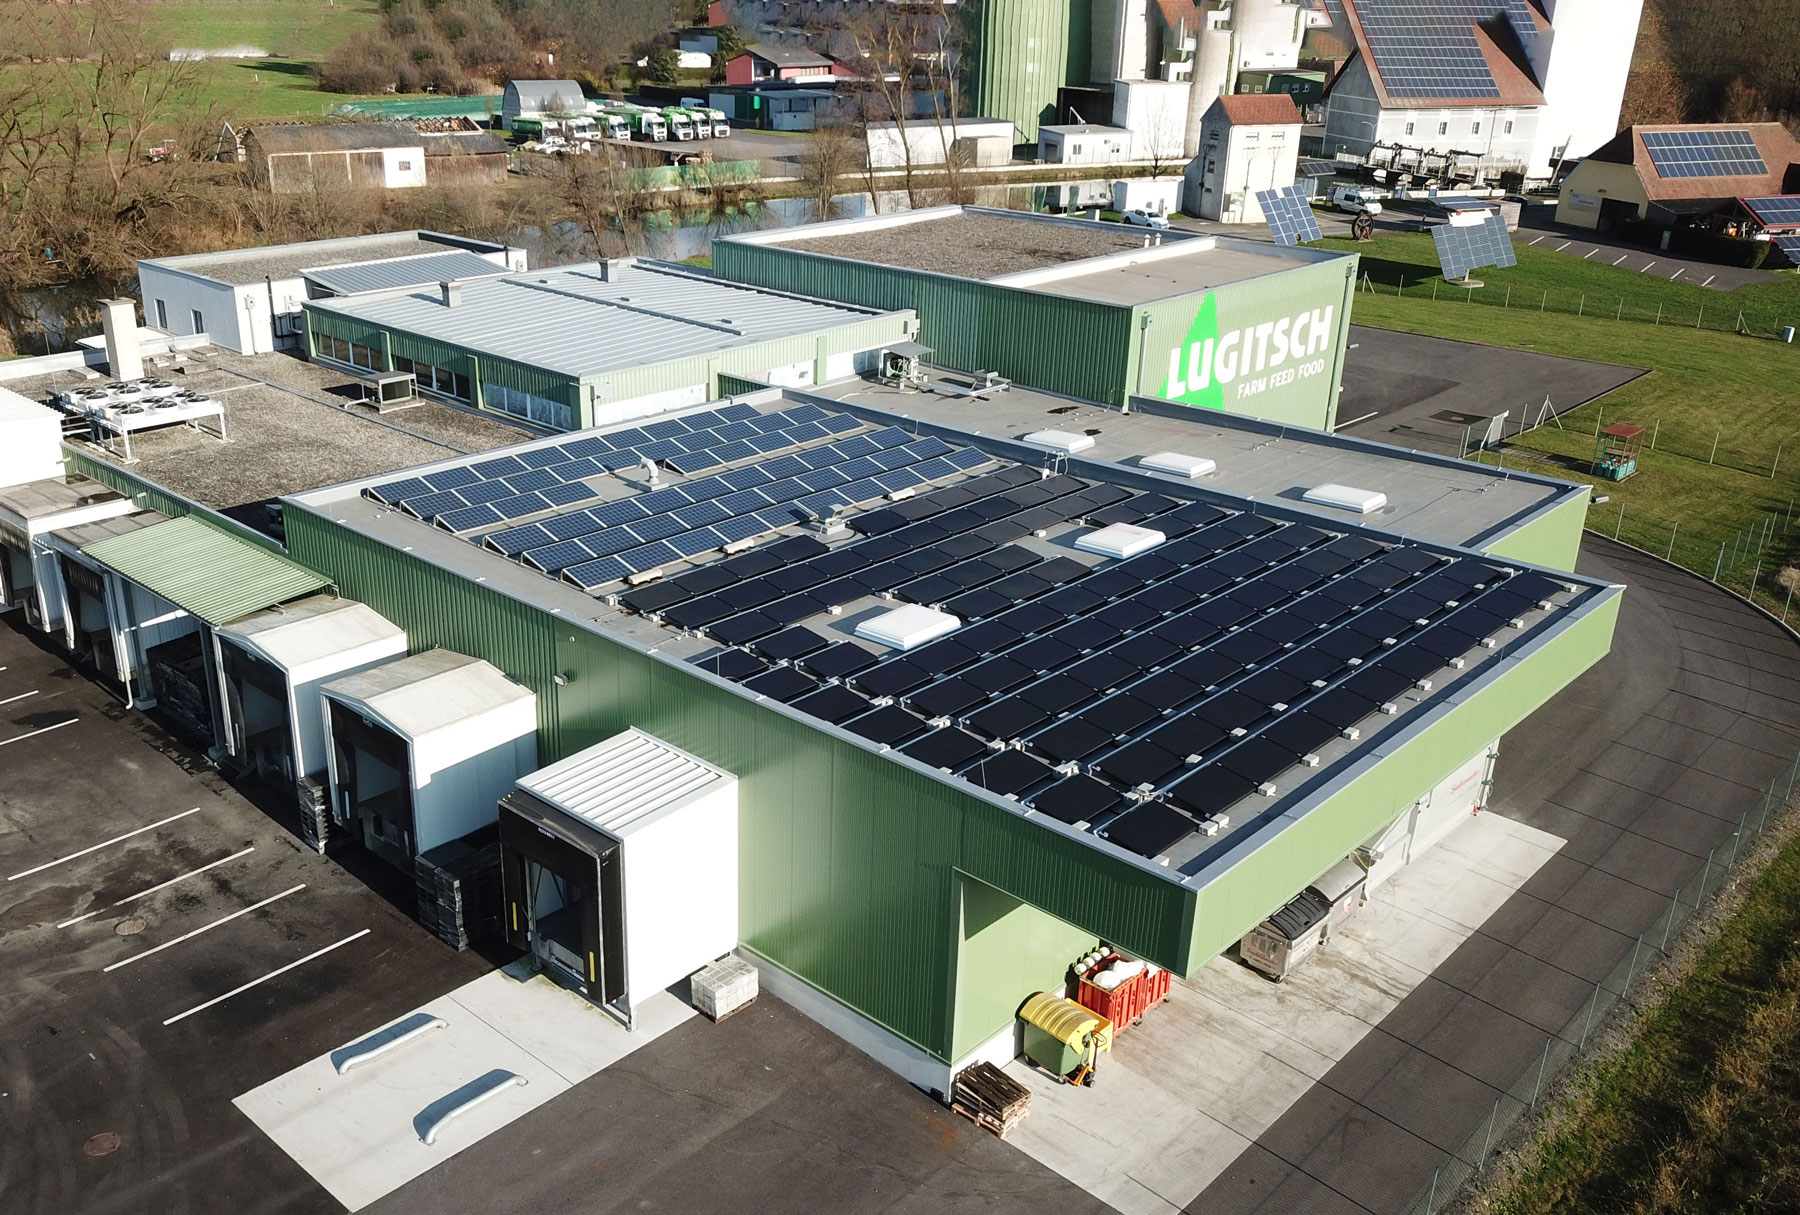 Photovoltaik vom Dach des Geflügelhof Lugitsch - Nutzung nachhaltiger Energie 